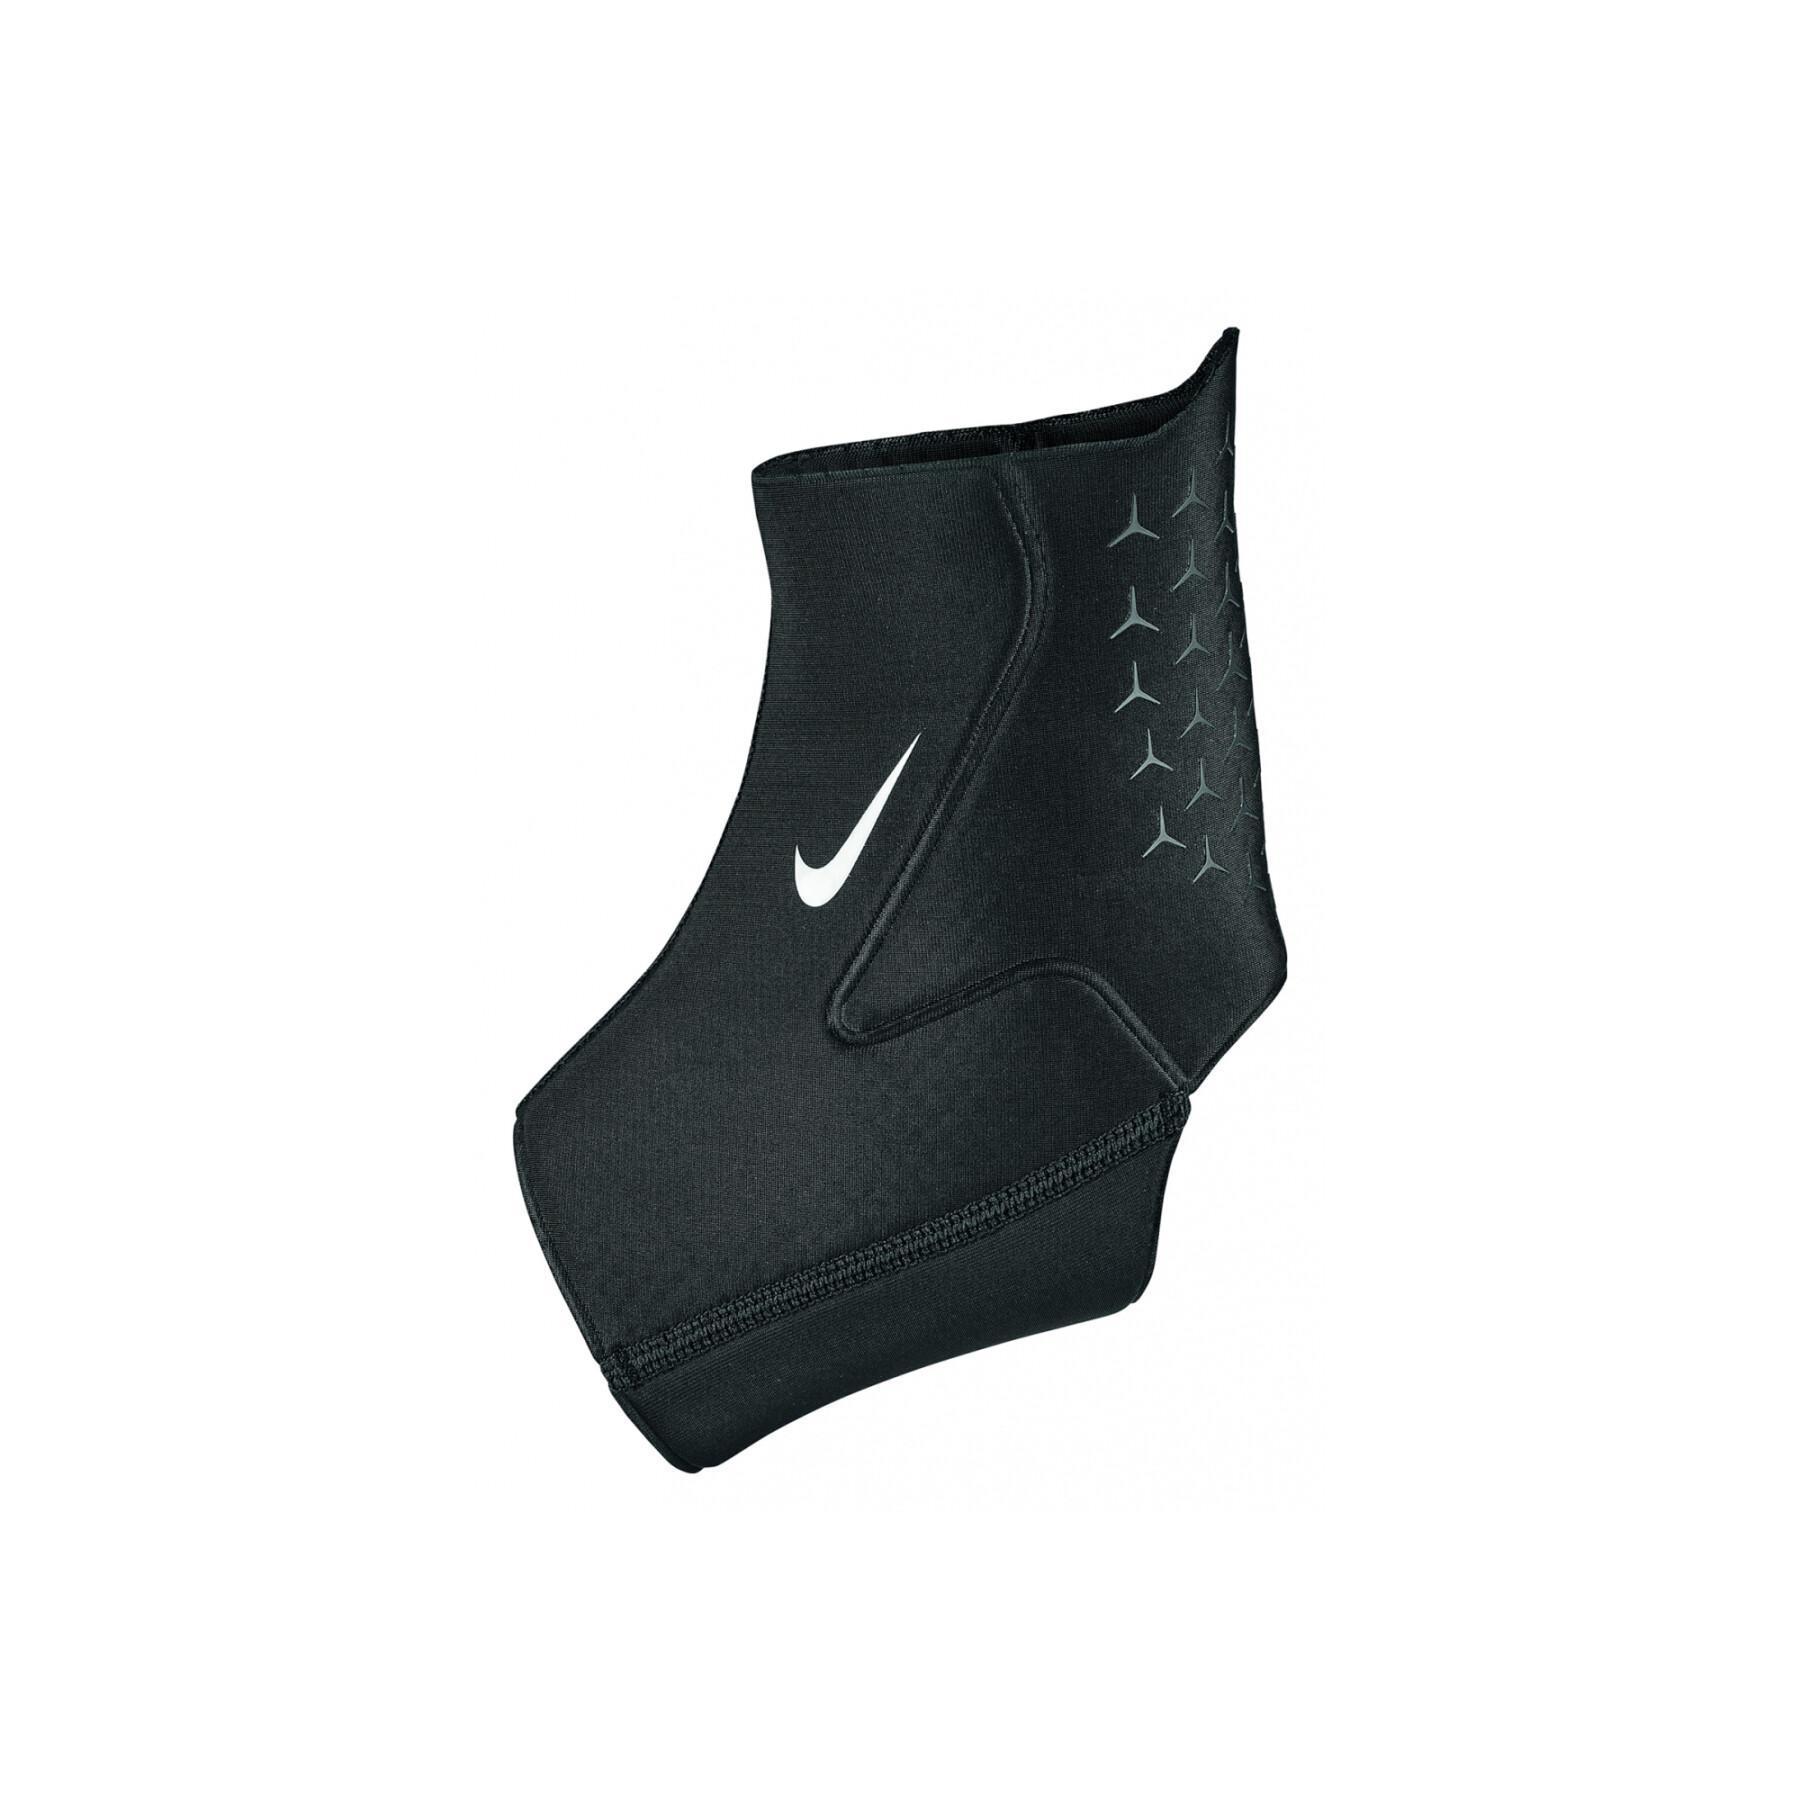 Enkelbrace Nike pro 3.0